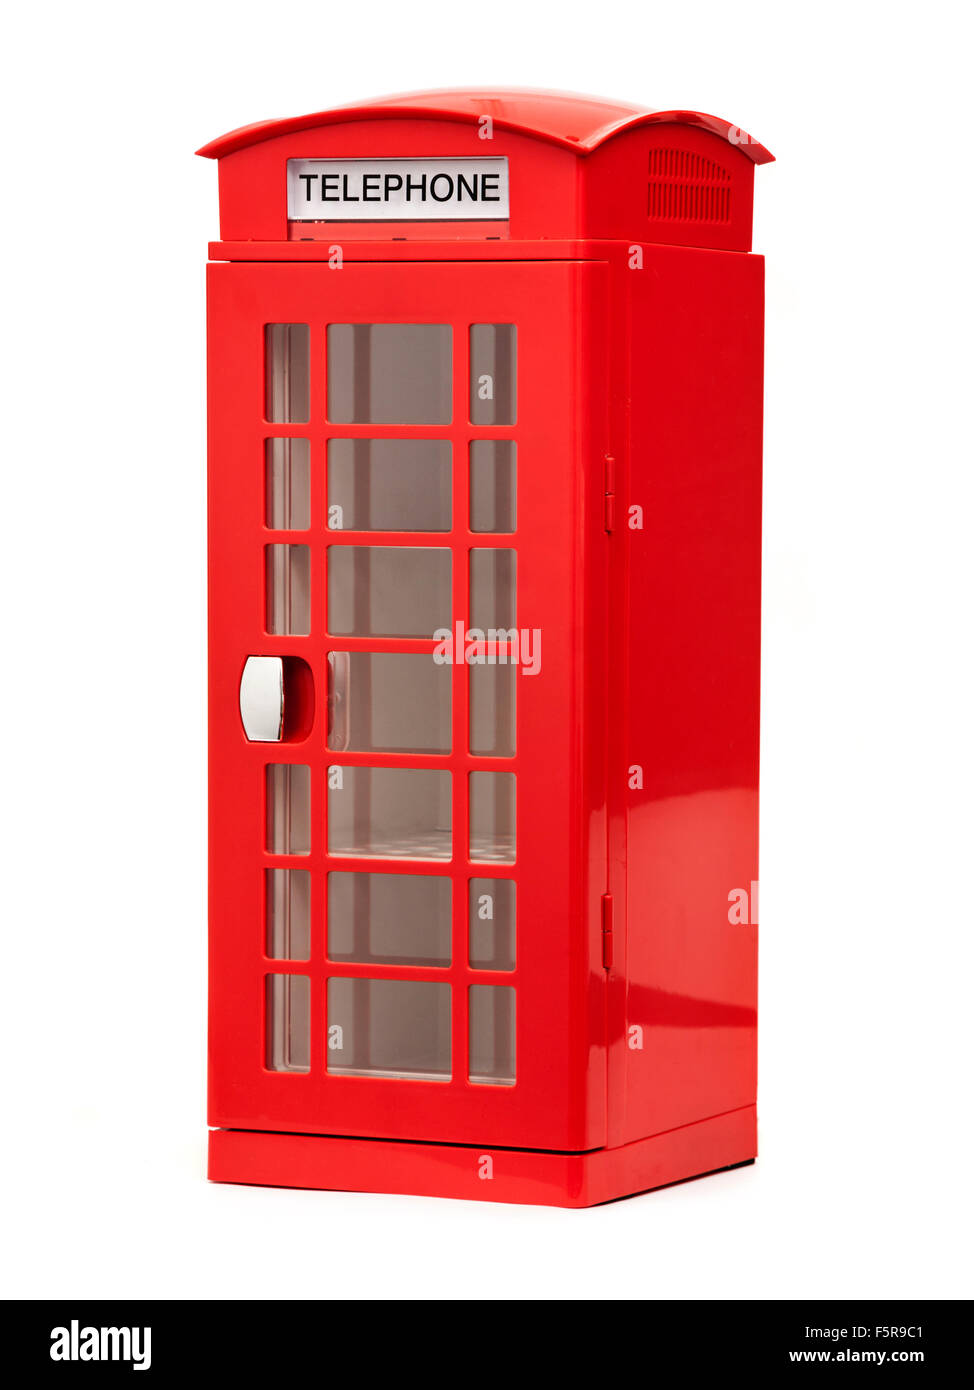 British telephone box style novelty fridge Stock Photo